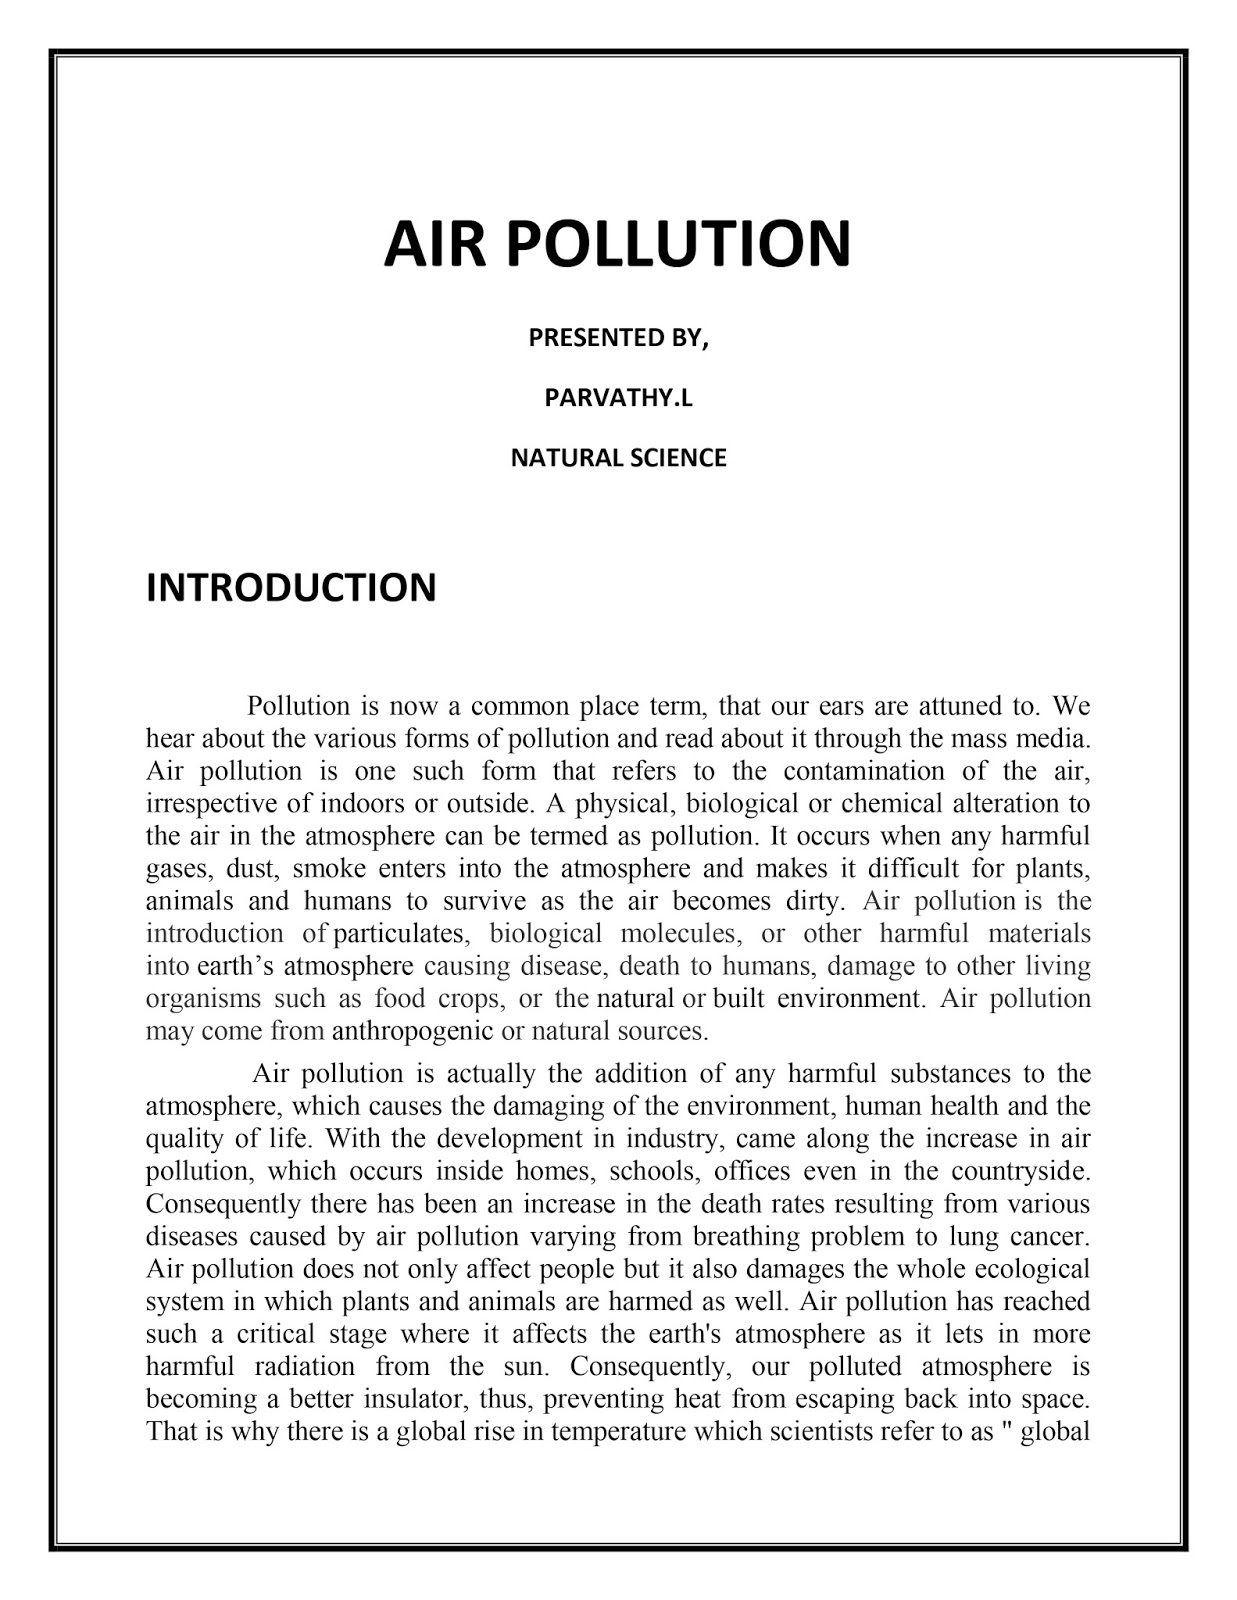 Essay of environmental pollution